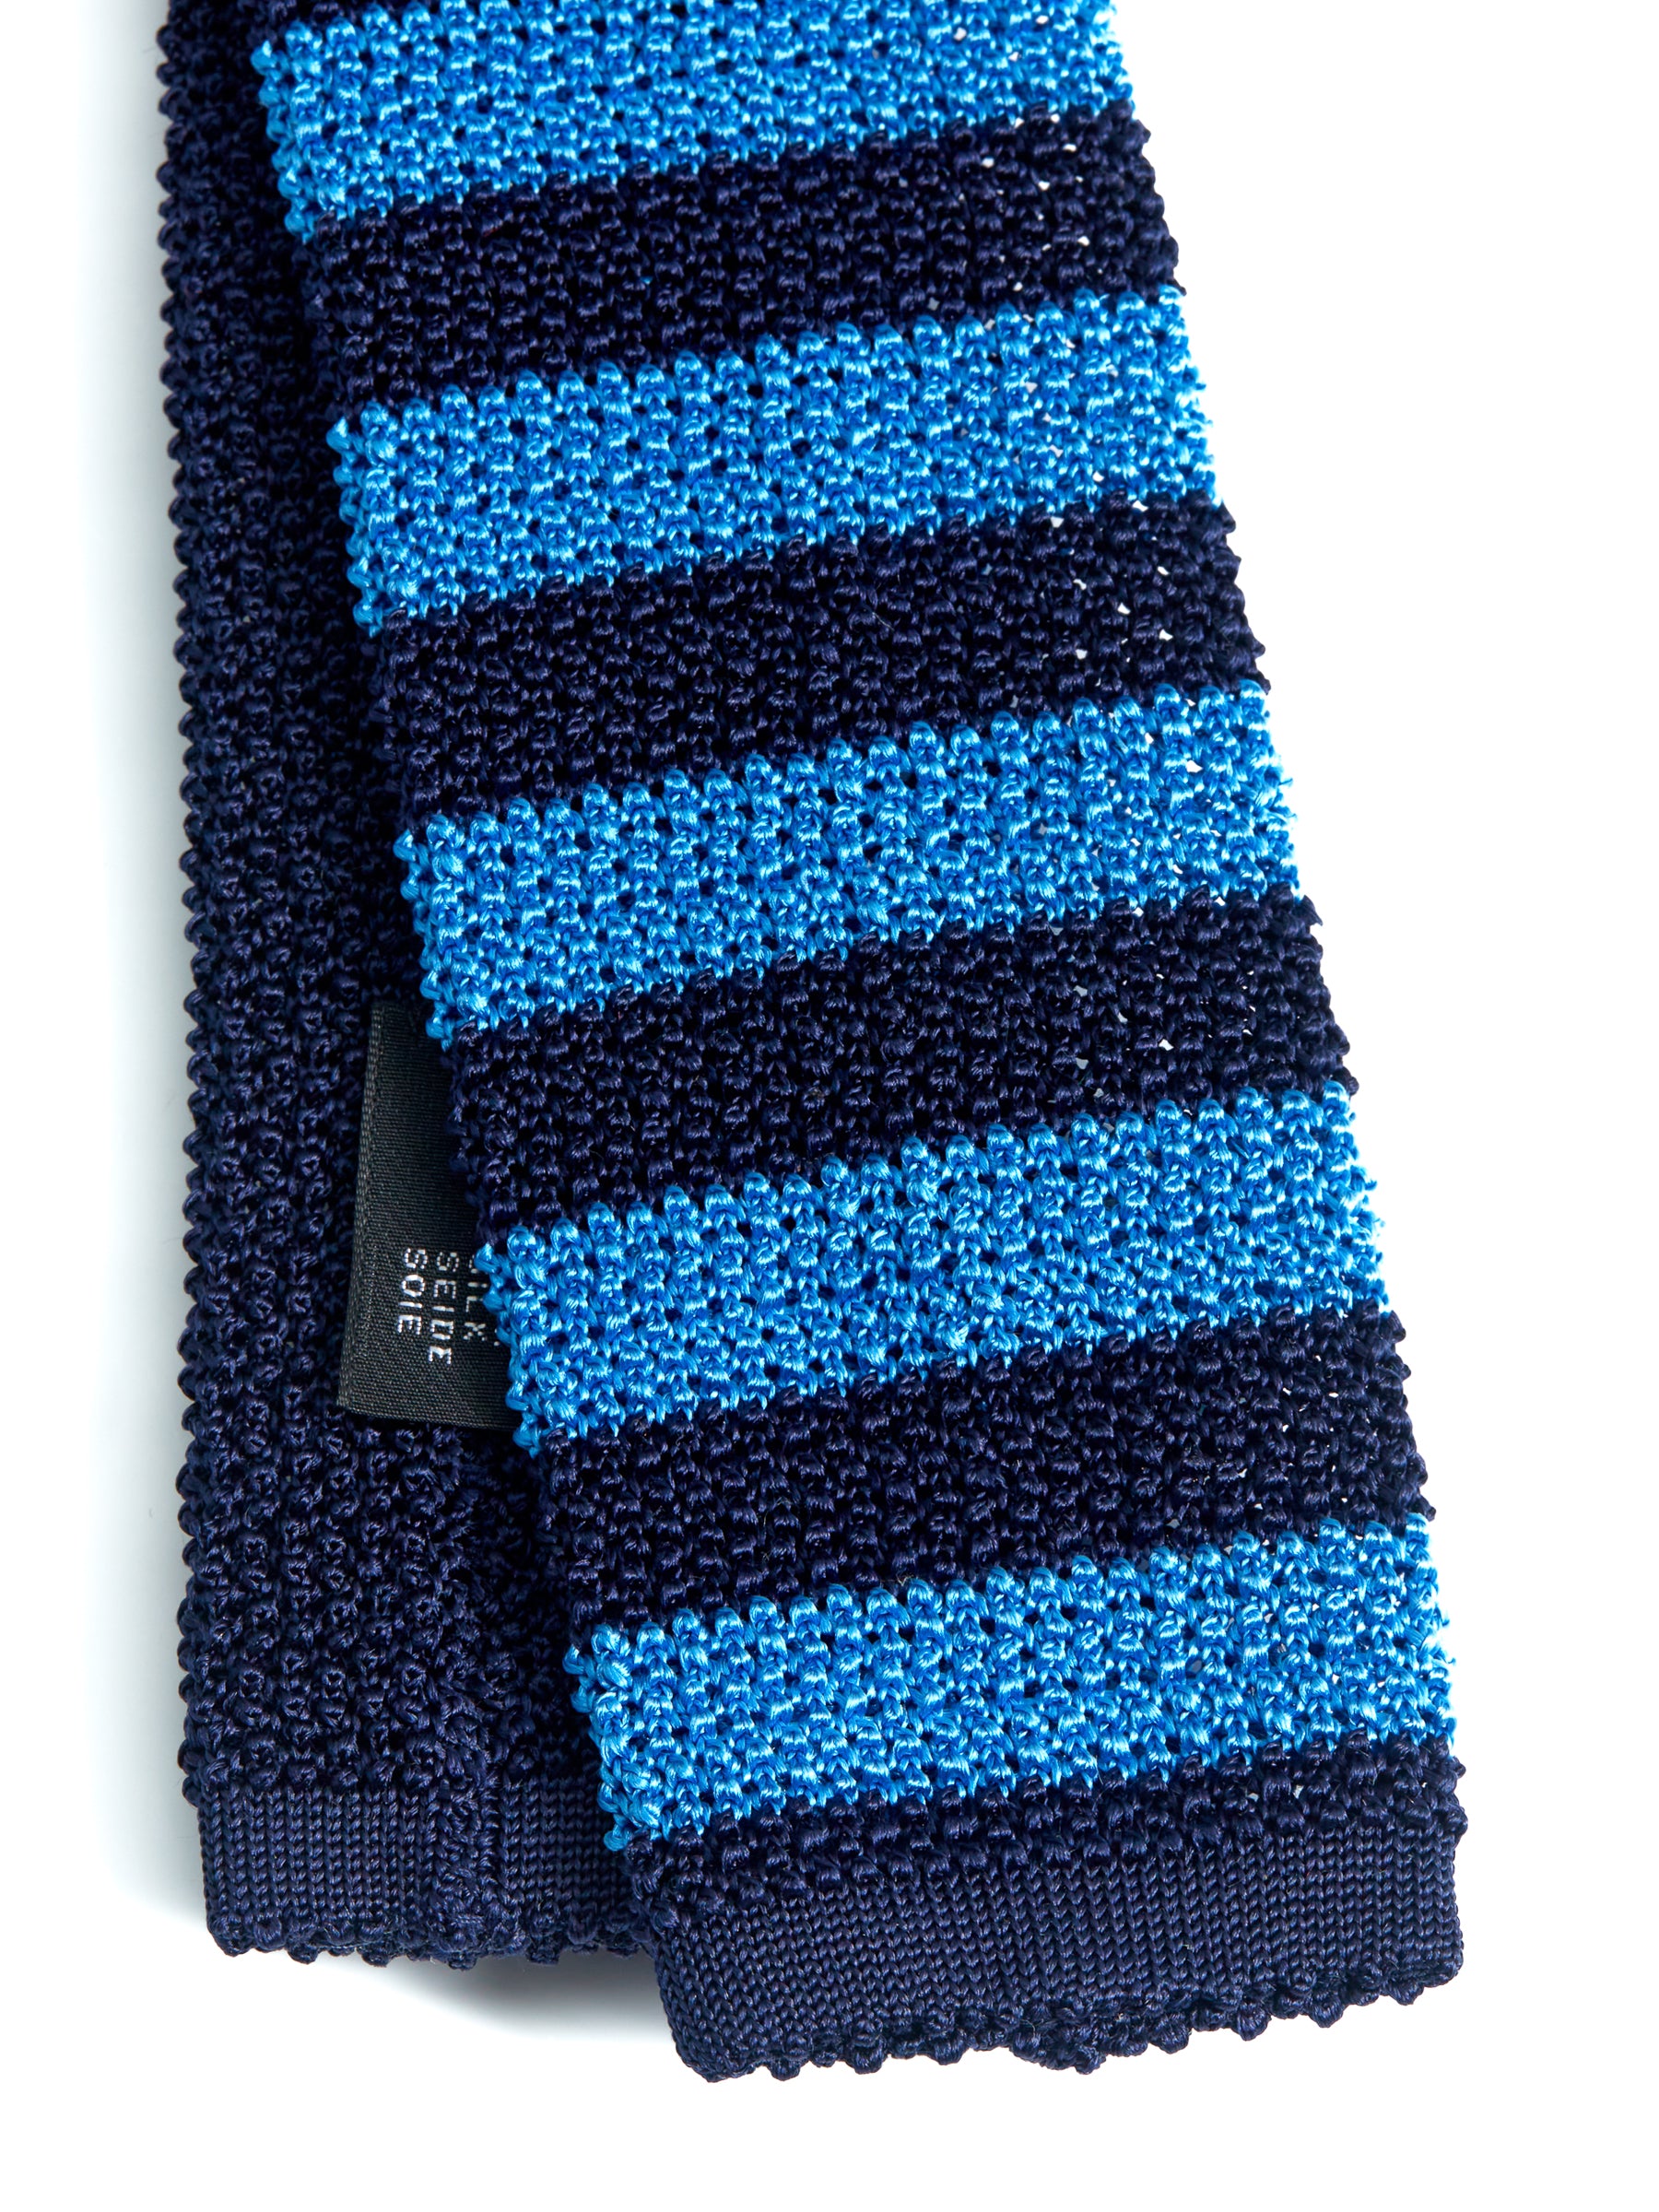 Silk Knitted Tie Navy/Blue Stripe